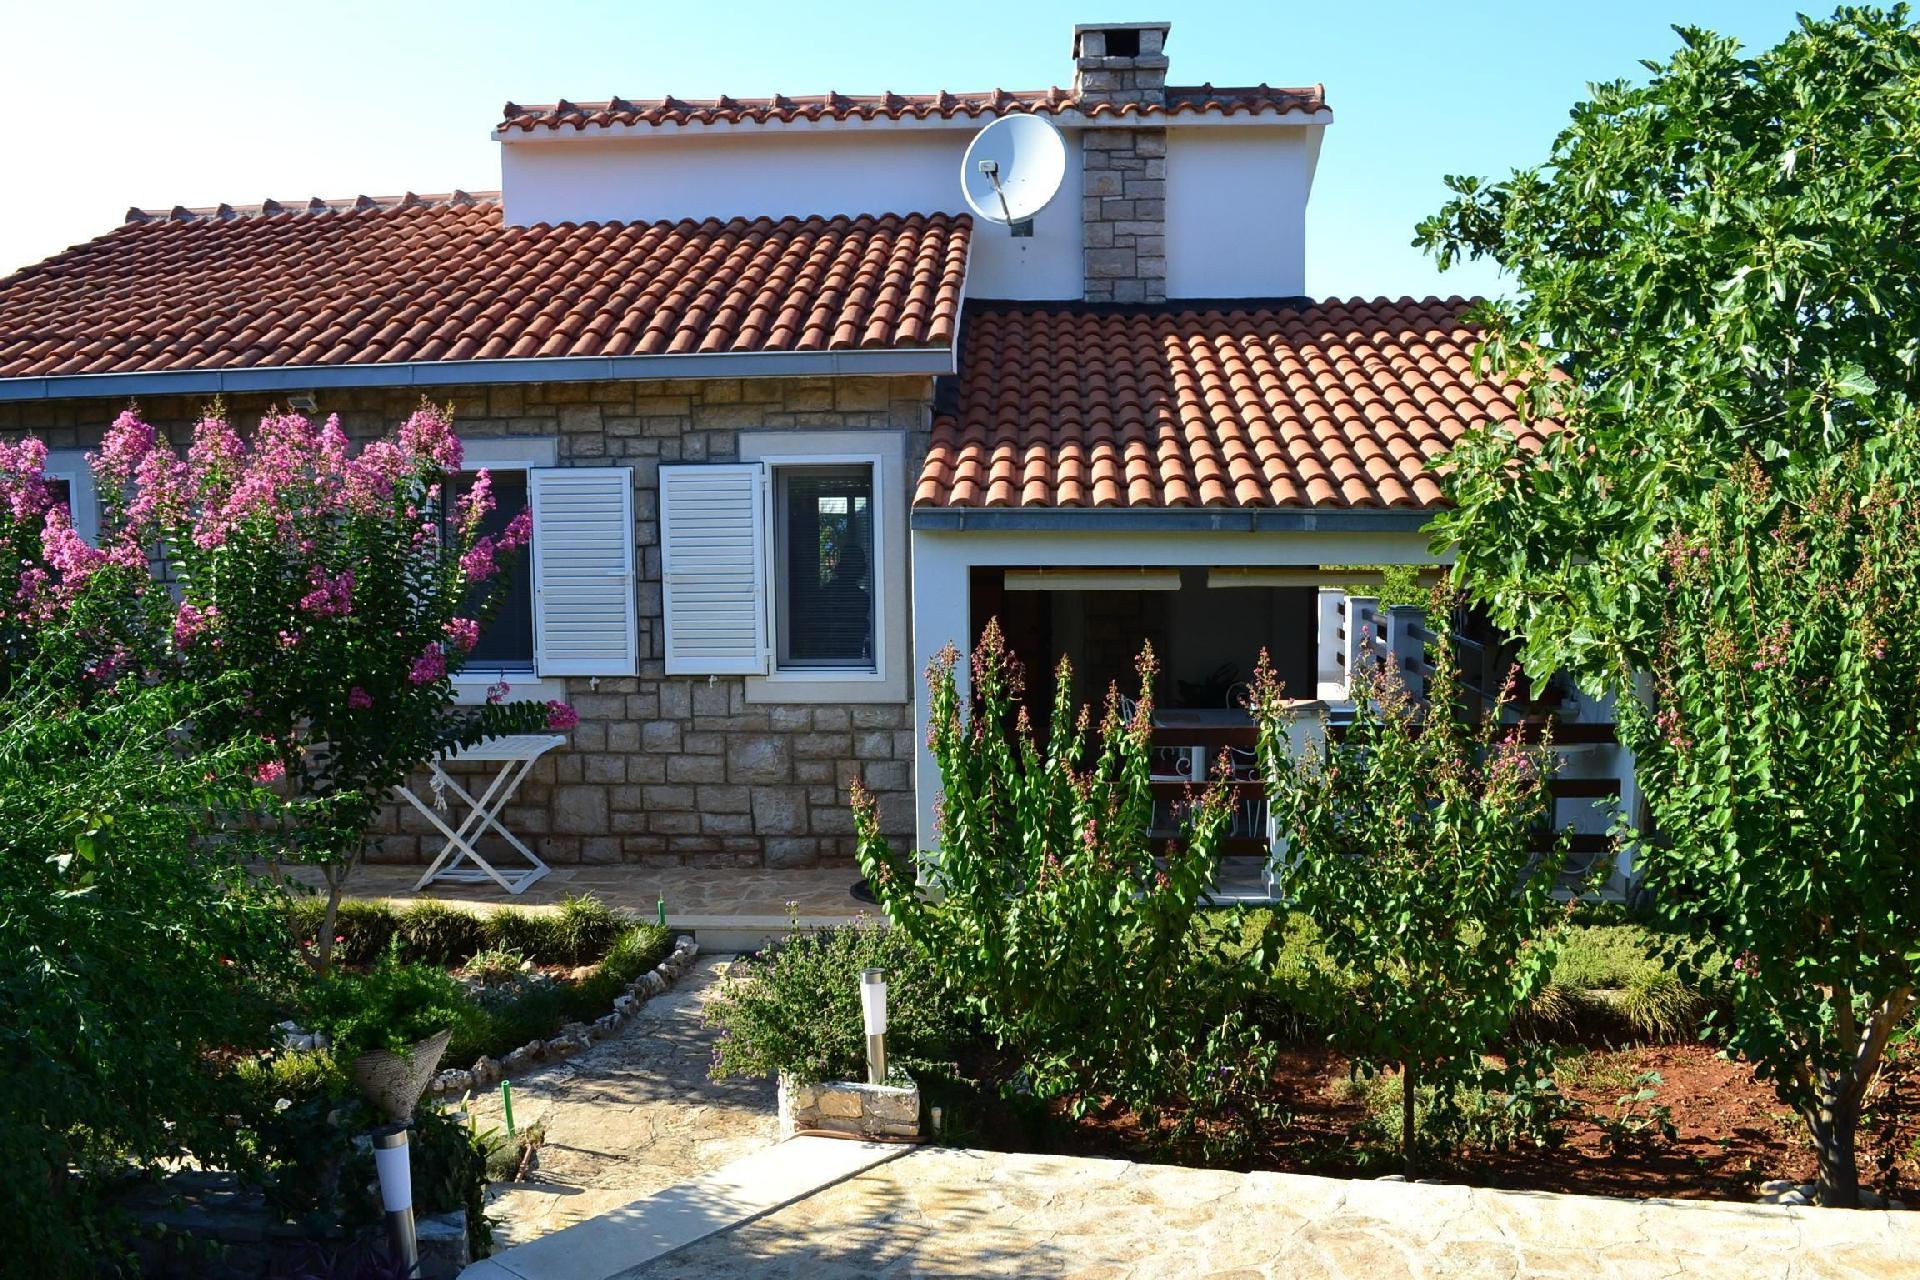 Barrierefreie Ferienwohnung mit zwei Terrassen, in Ferienhaus in Kroatien